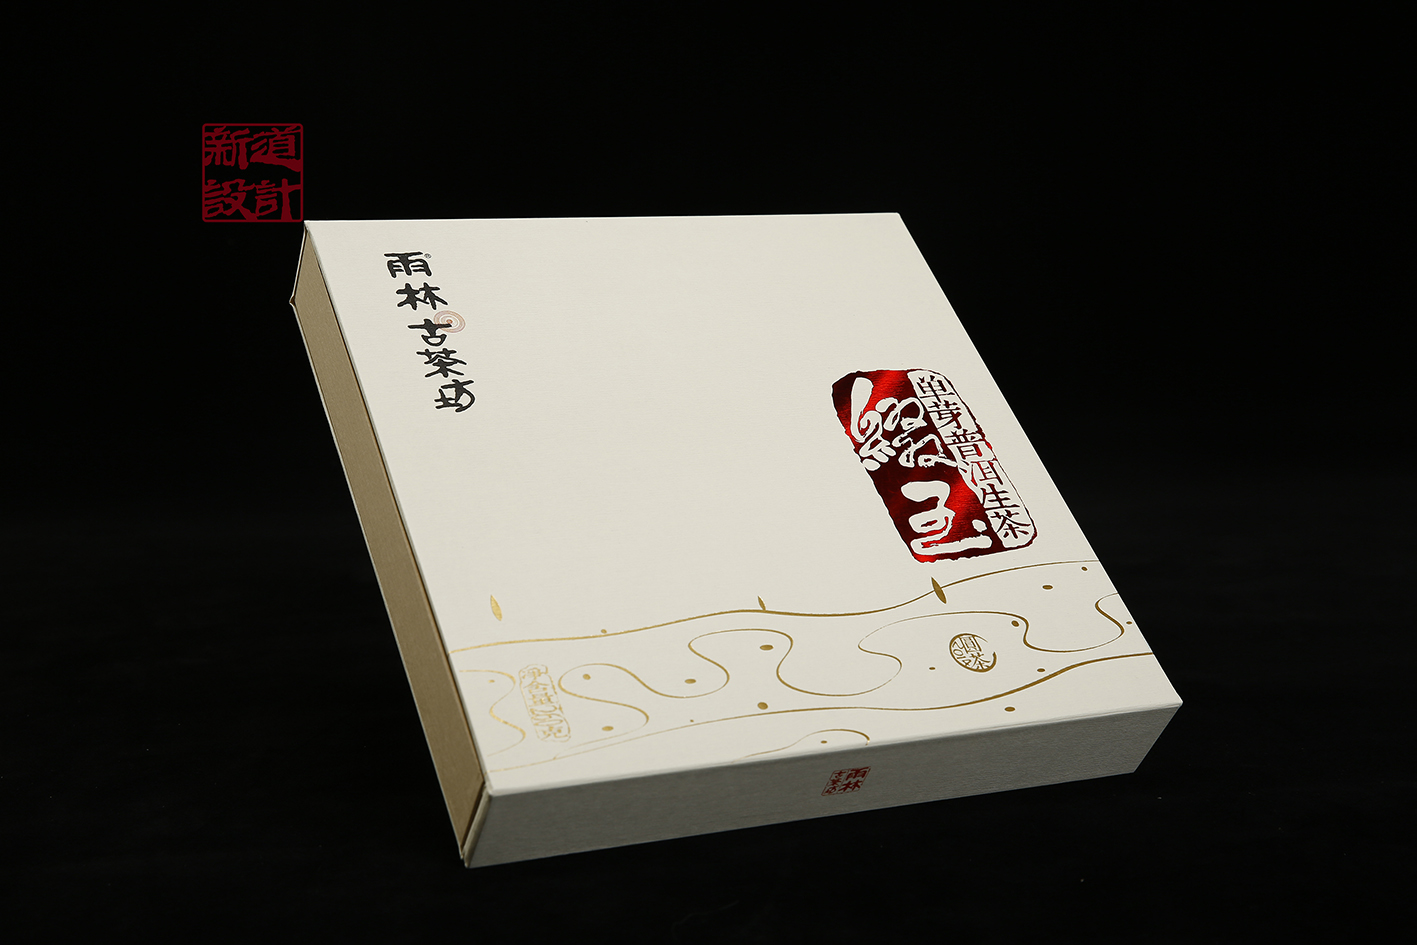 中国风普洱茶包装设计 焦墨画作品 雨林古茶坊包装设计 新道设计作品